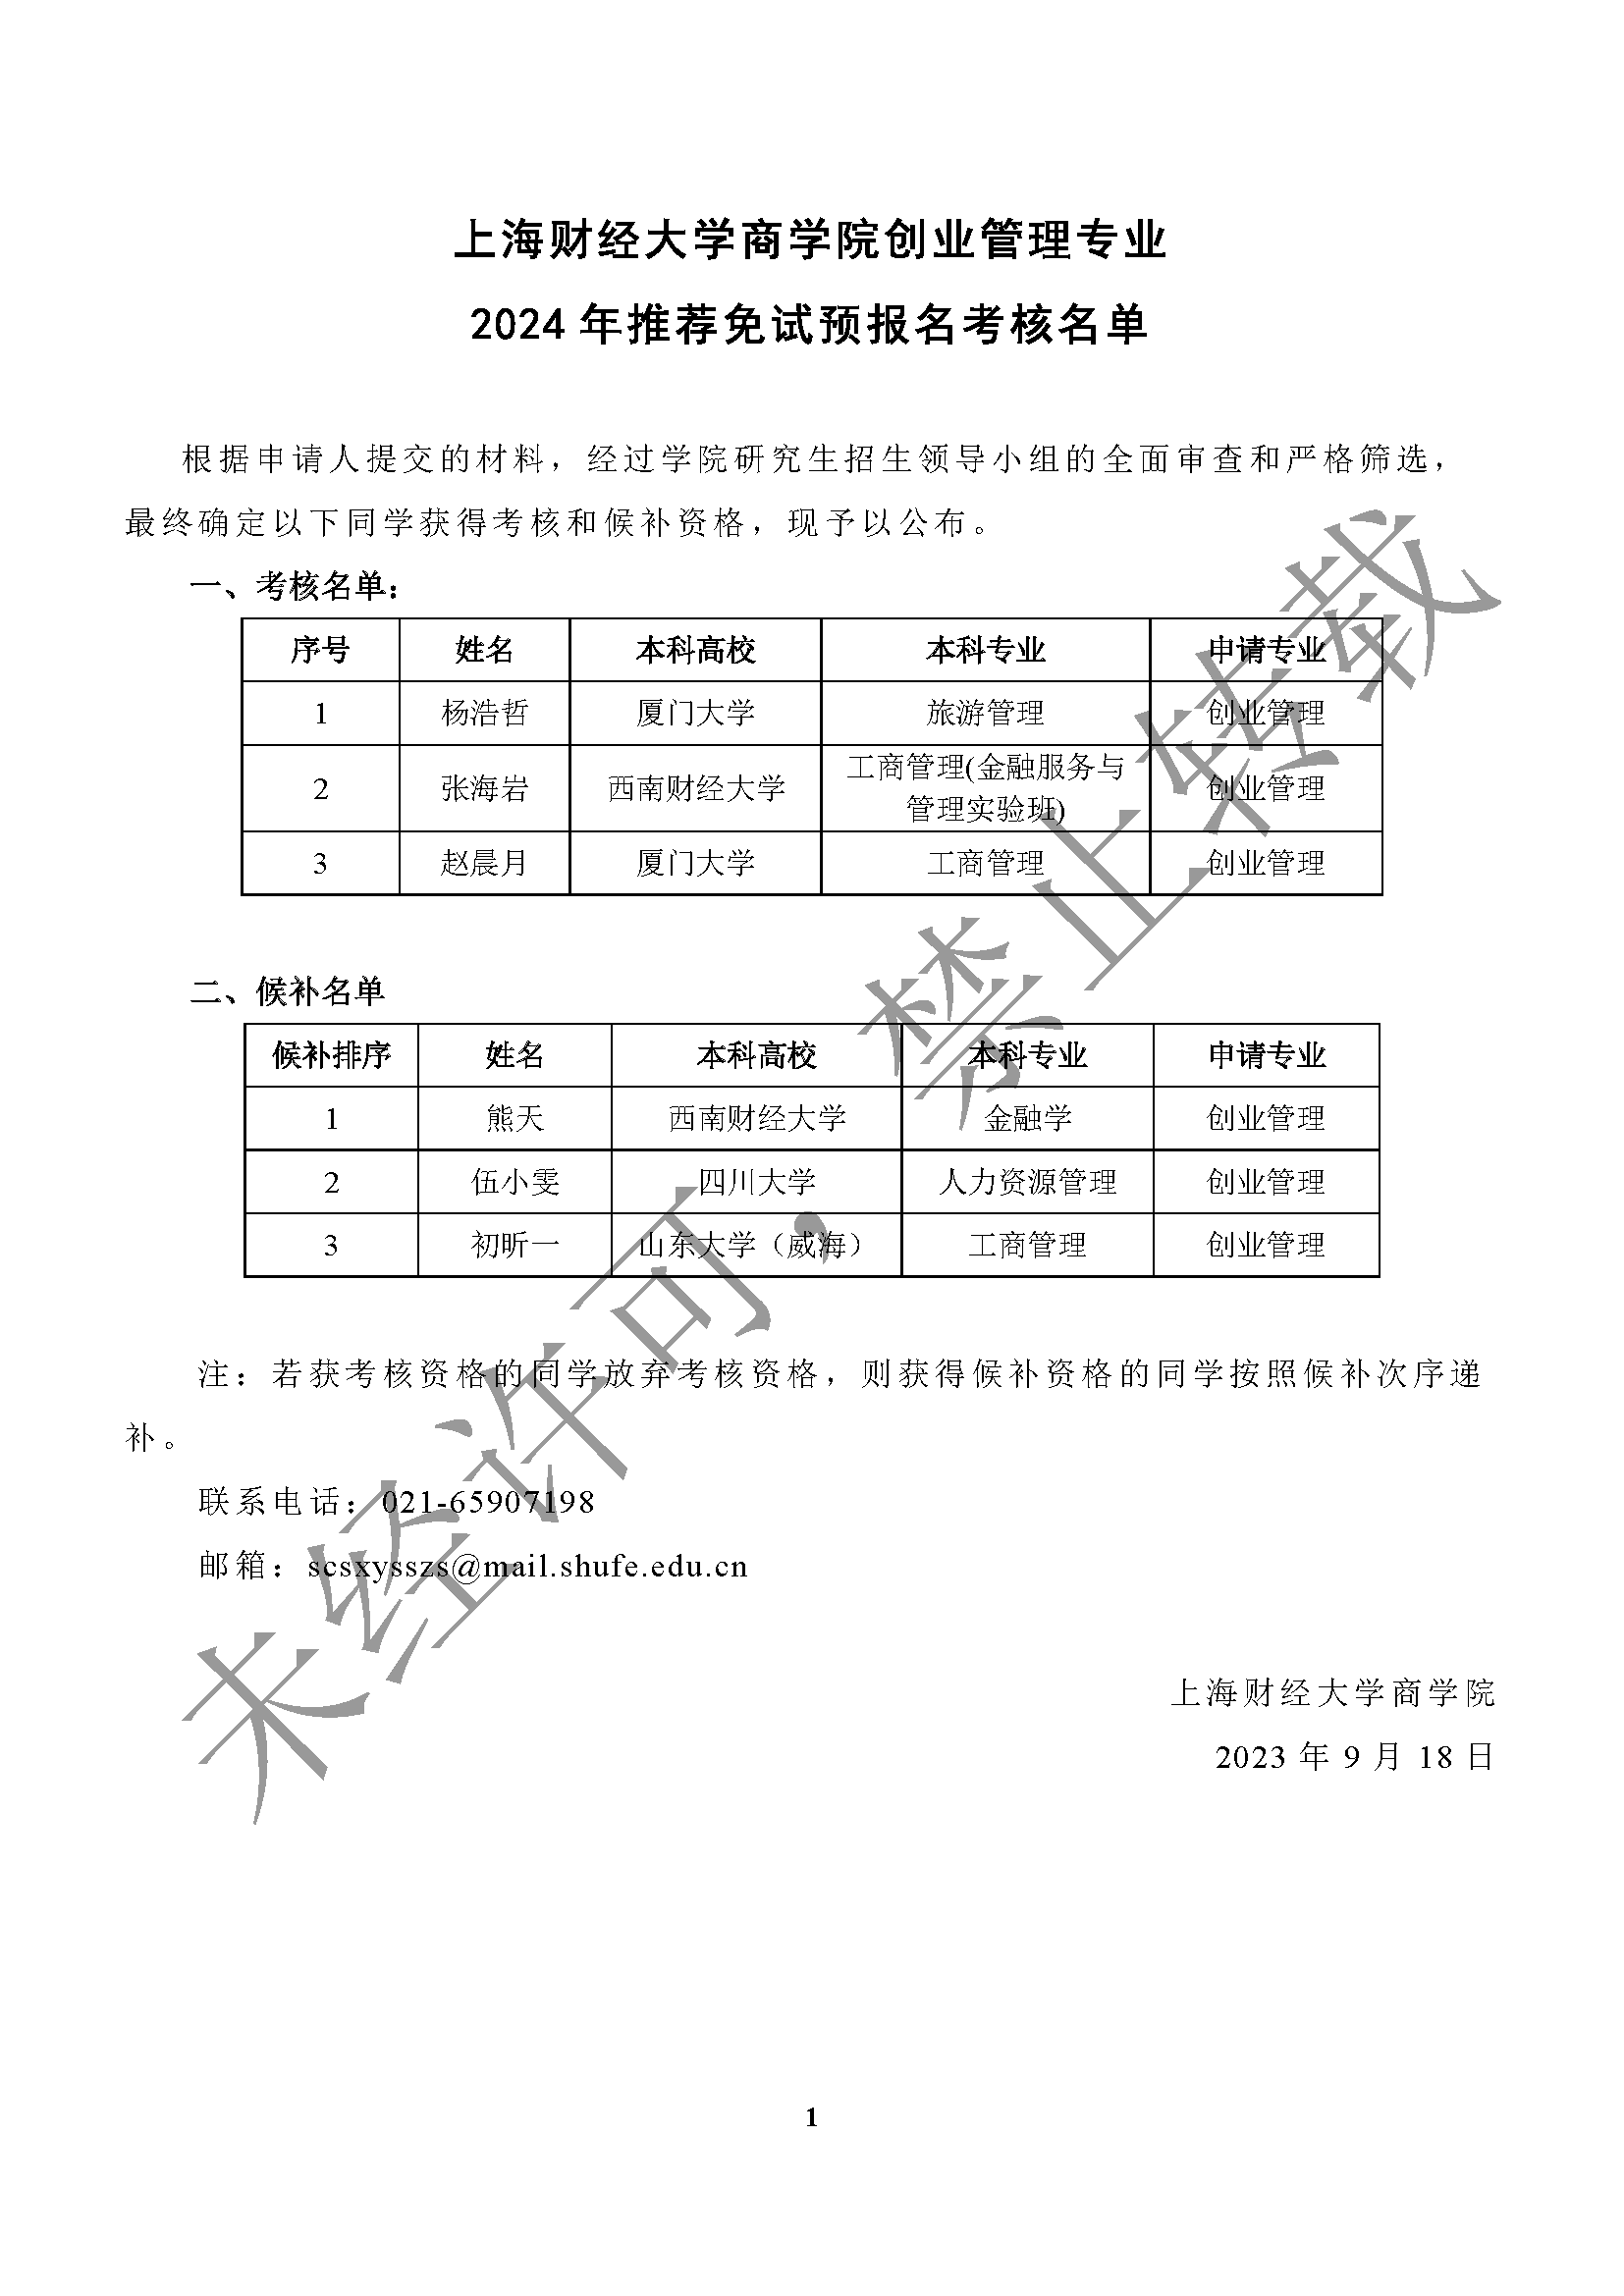 上海财经大学商学院创业管理专业2024年推荐免试预报名考核名单.png